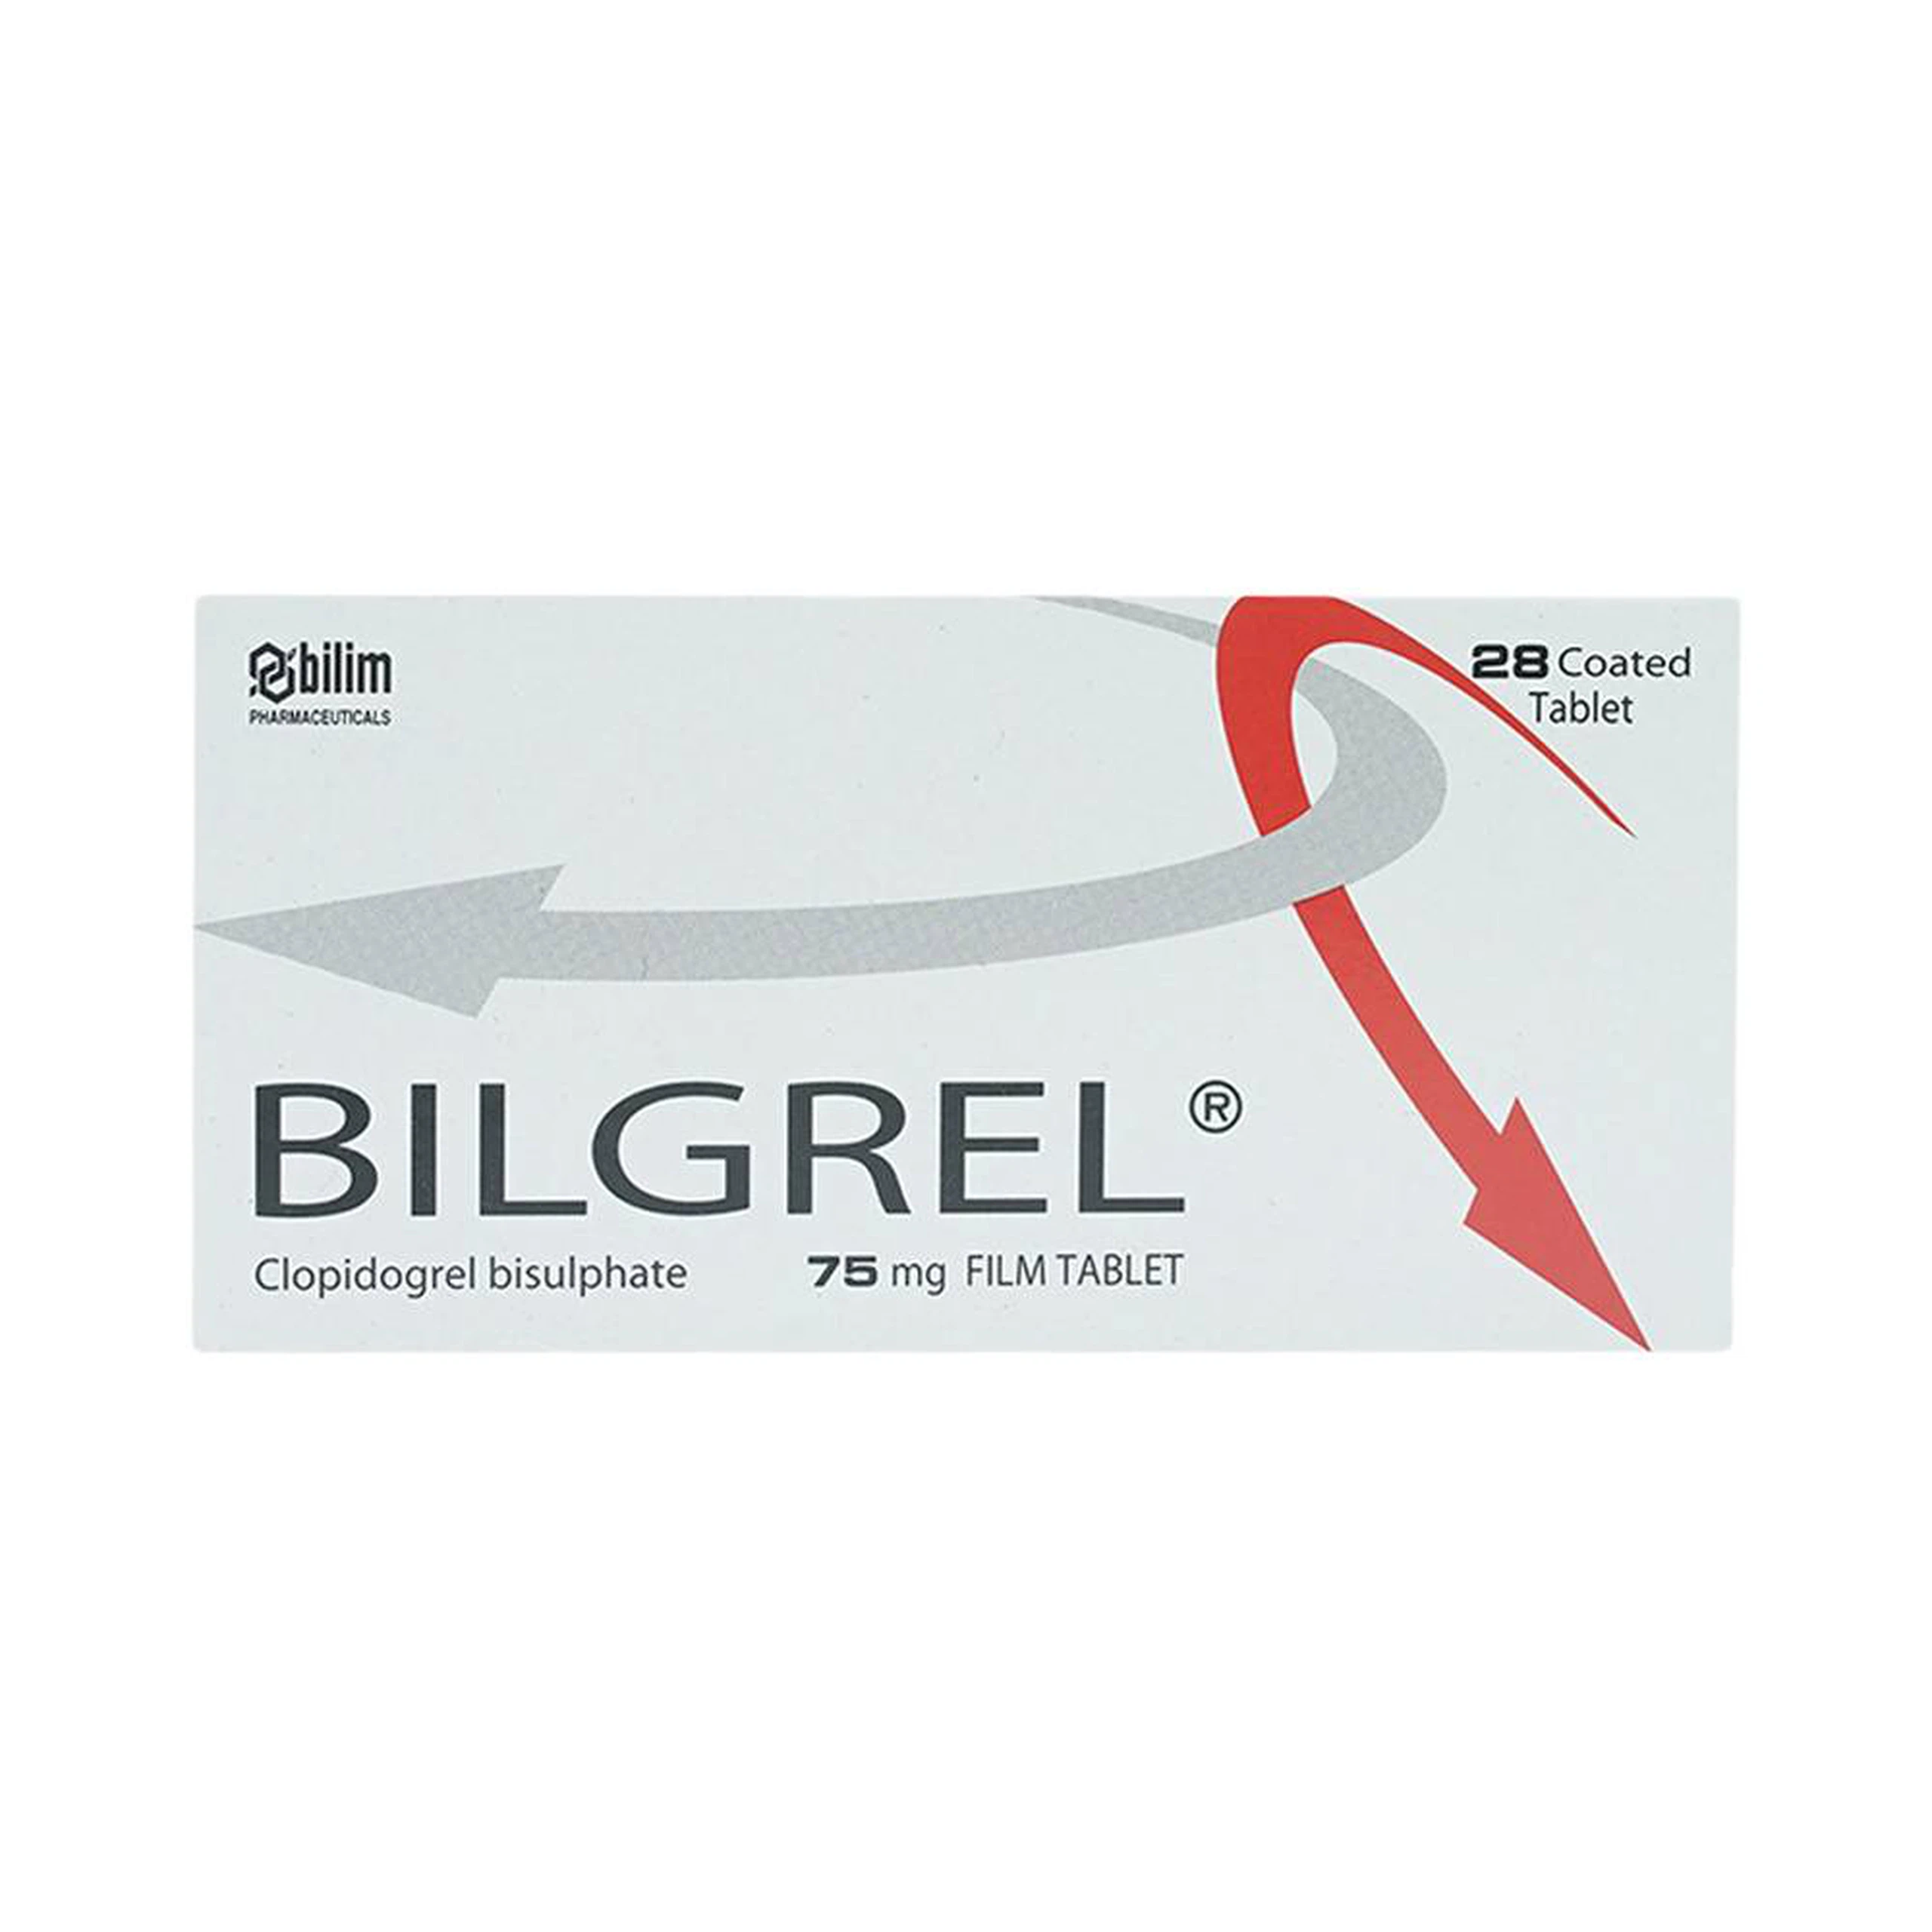 Thuốc Bilgrel 75mg Bilim Ilac điều trị nhồi máu cơ tim, đột quỵ, bệnh động mạch ngoại biên (2 vỉ x 14 viên)